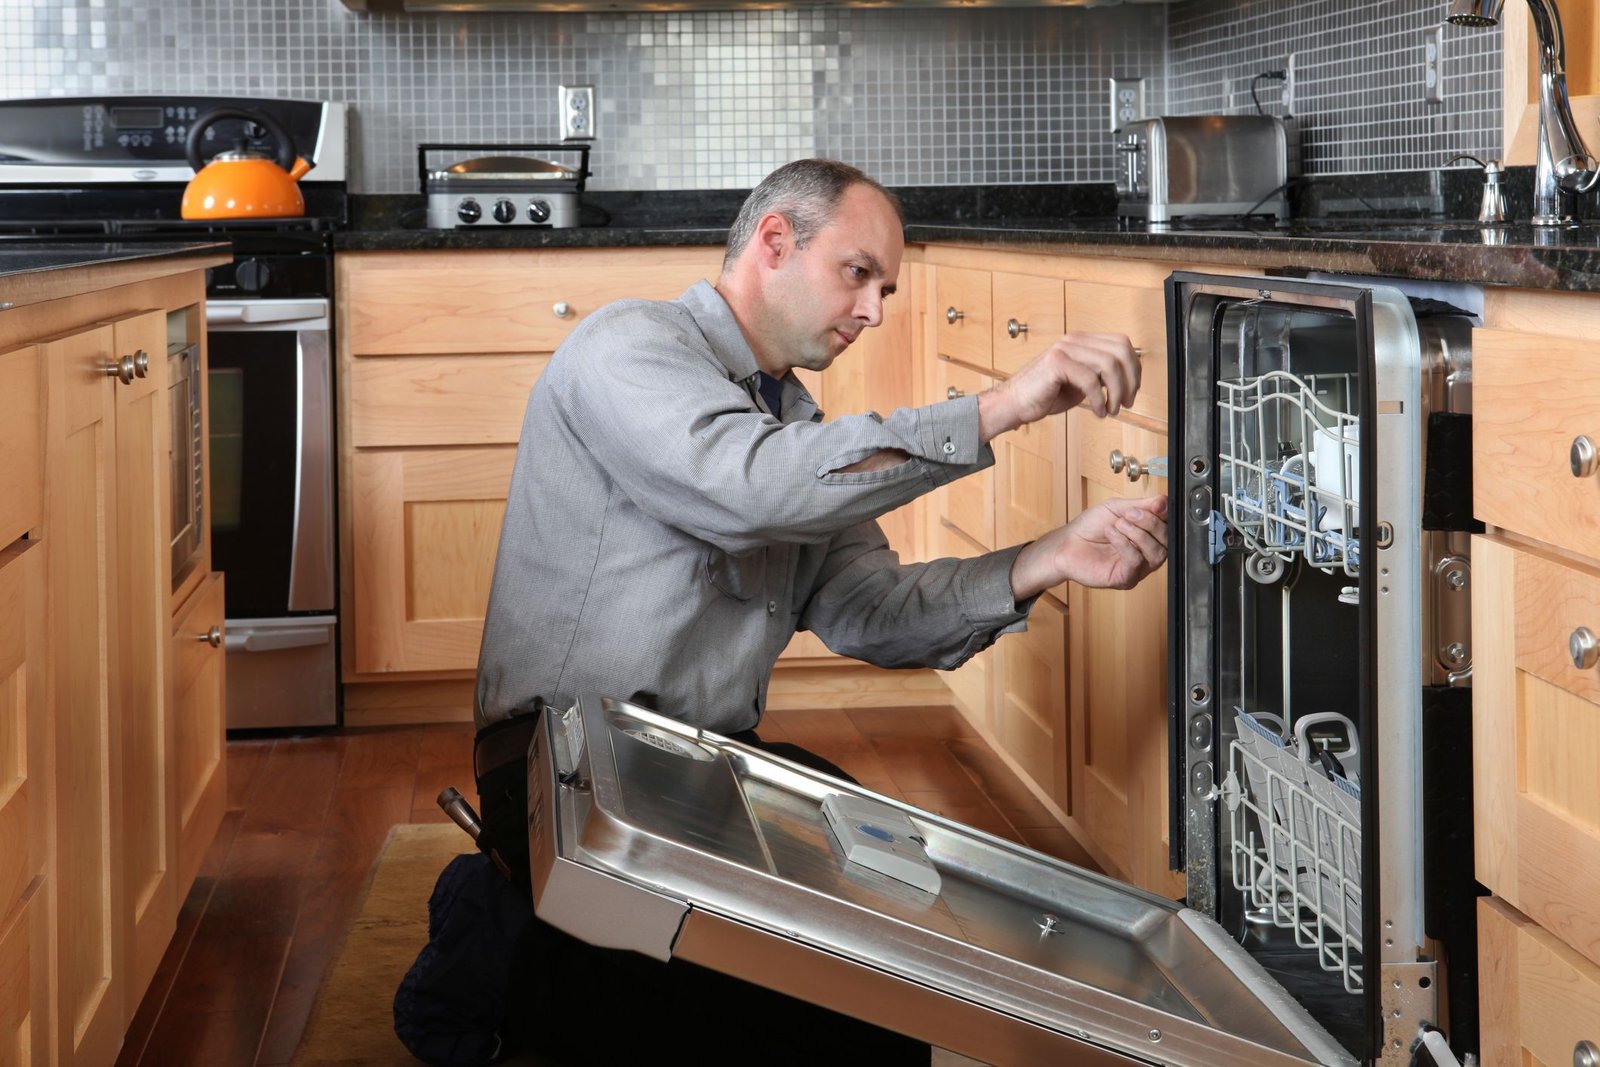 dishwasher repair dubai